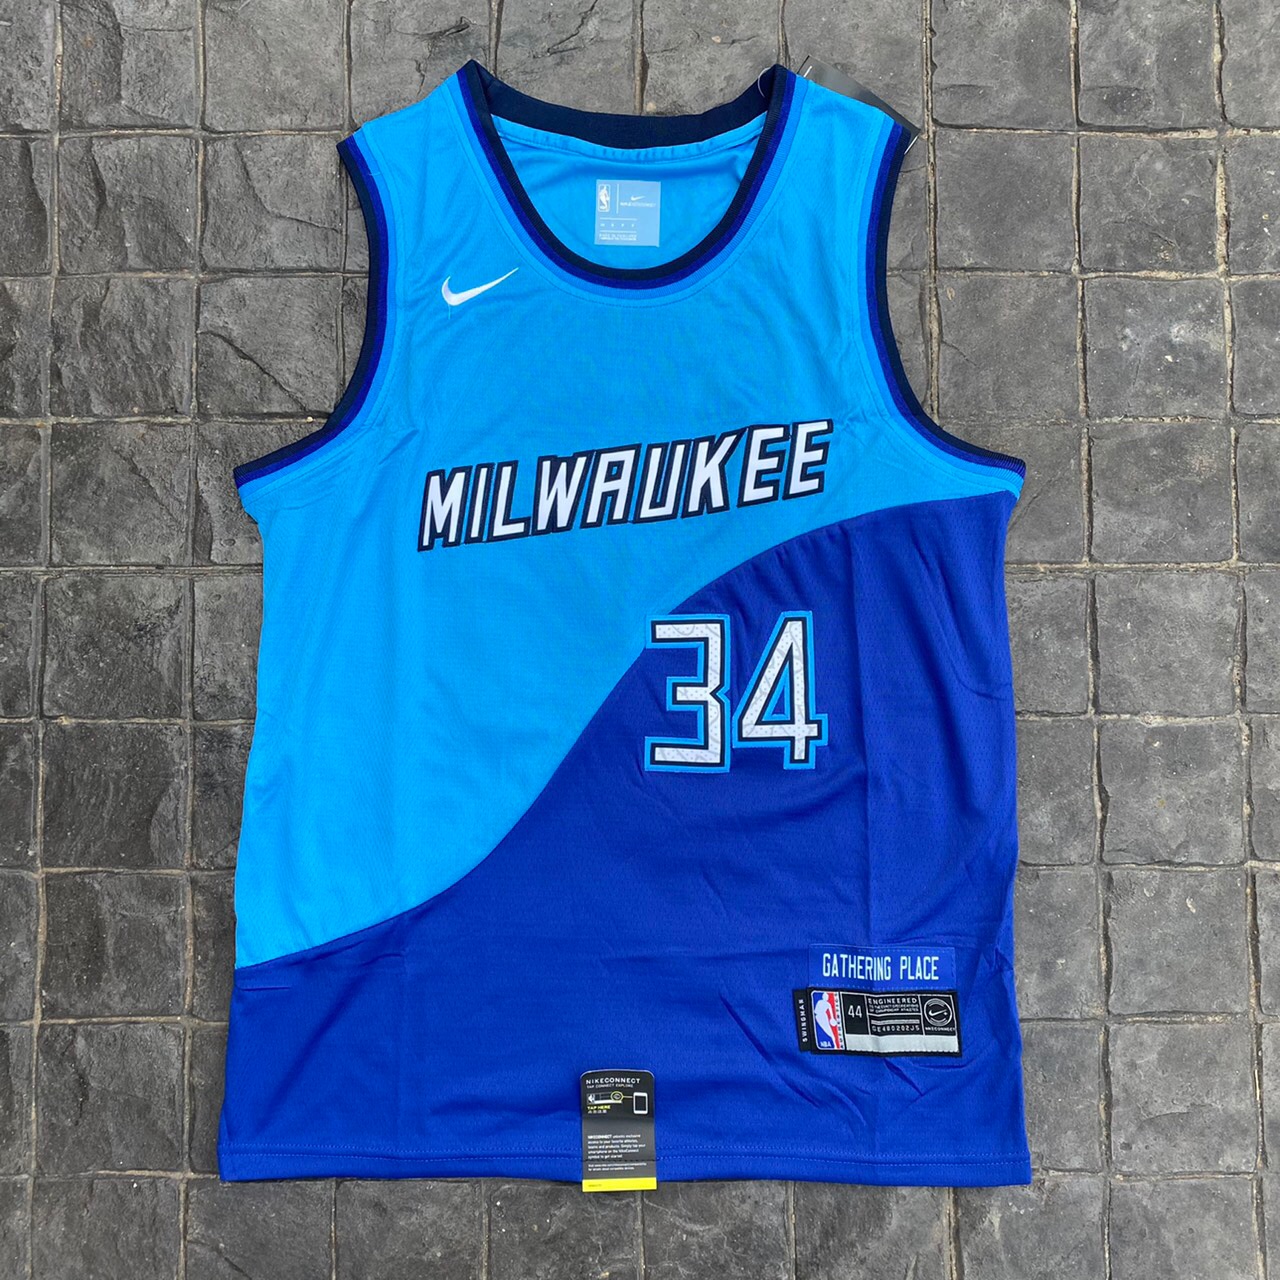 เสื้อบาสเกตบอล basketball jerseys(พร้อมจัดส่ง)#Milwaukee New city edition 34 ANTETOKOUNMPO.